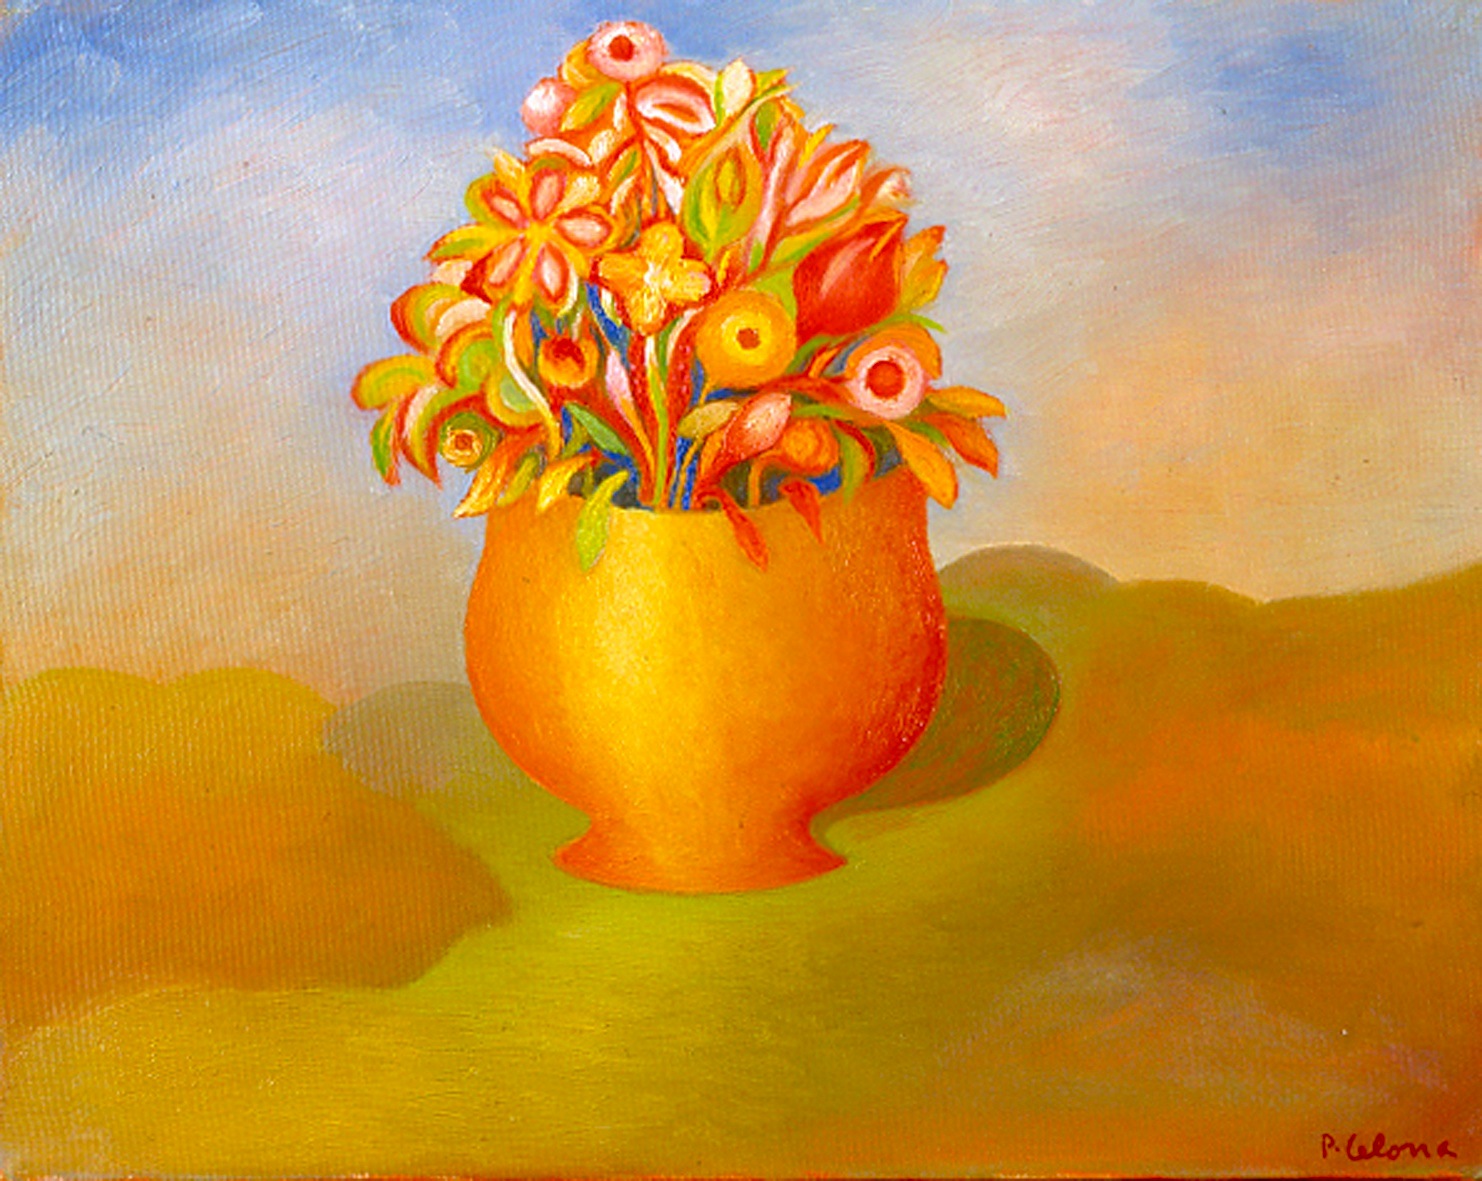 Vaso e fiori, ca. 1995
Olio su tela 40 x 50 cm,
Collezione privata